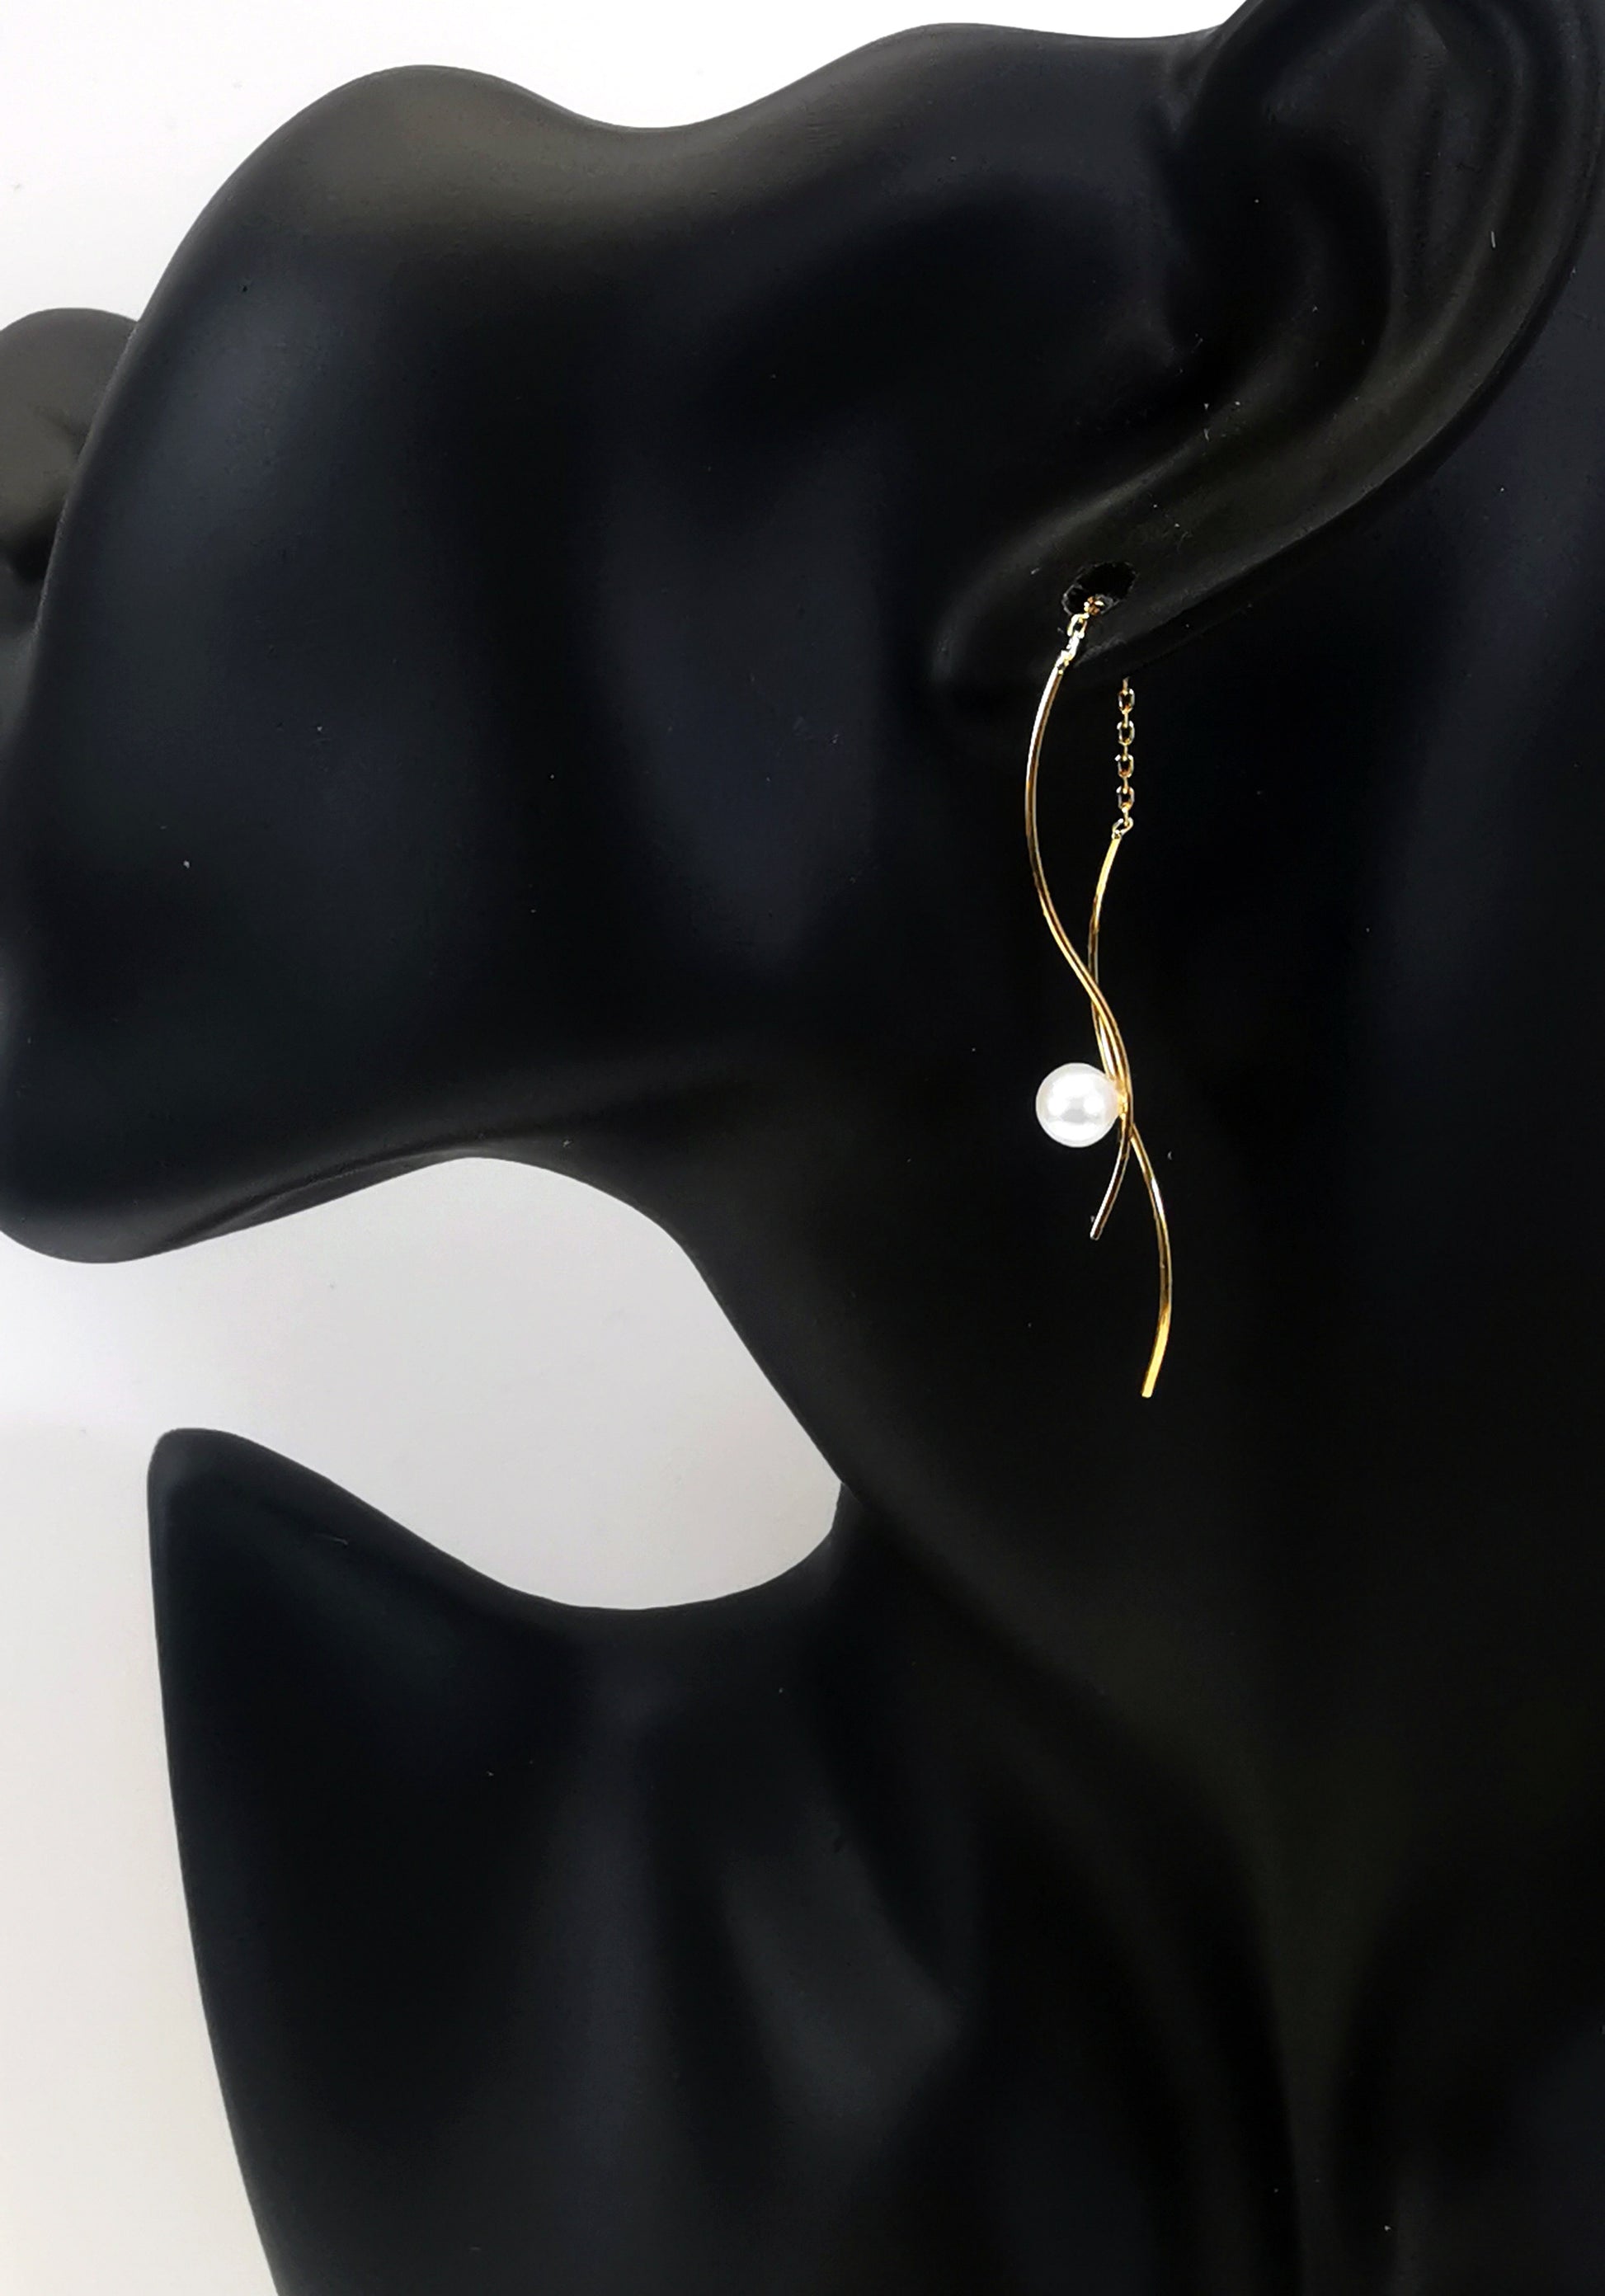 Boucles d'oreilles perles de culture blanches rondes 5mm sur pendants plaqués or. Les pendants sont constitués de deux "s" longs de 45mm reliés par 15mm de chaine. Sur un des 2 "s", la perle est montée perpendiculairement, à 8mm du bas. Représentées par une boucle montée sur l'oreille d'un mannequin buste noir,  le "s" avec la perle devant le lobe, l'autre derrière. Vue de coté en plan large.